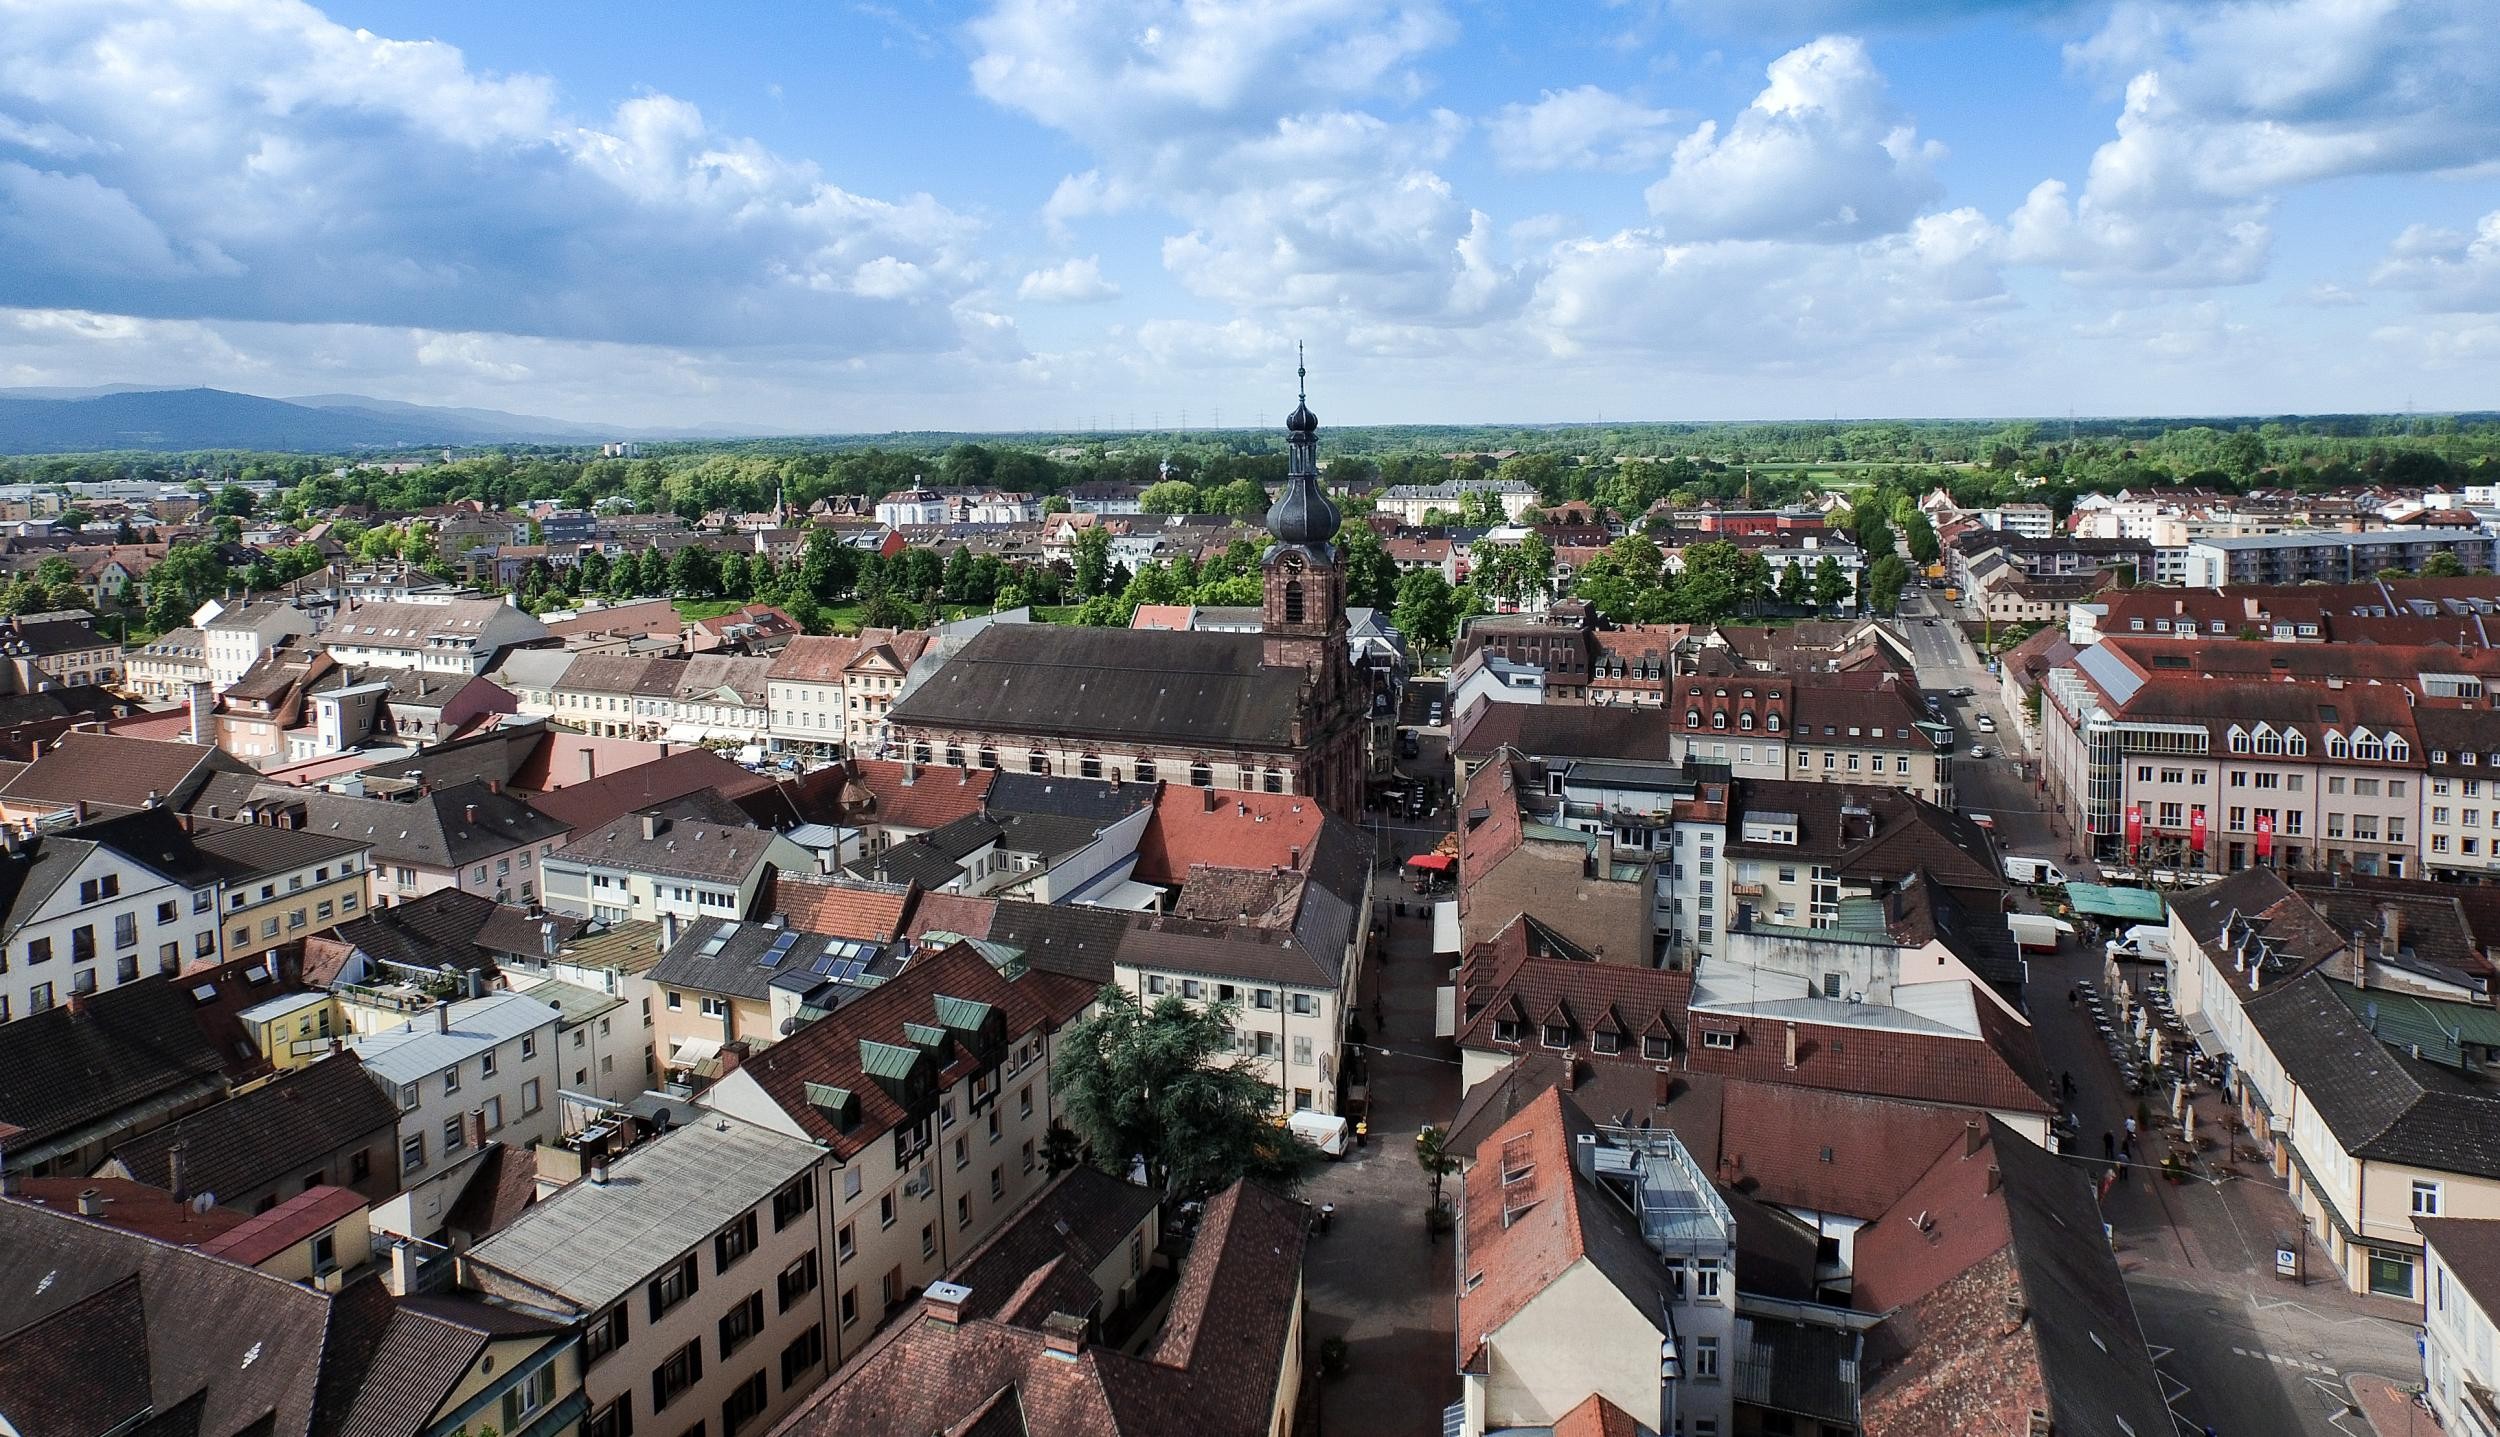 Luftaufnahme Innenstadt Rastatt mit Häusern und Kirche St. Alexander